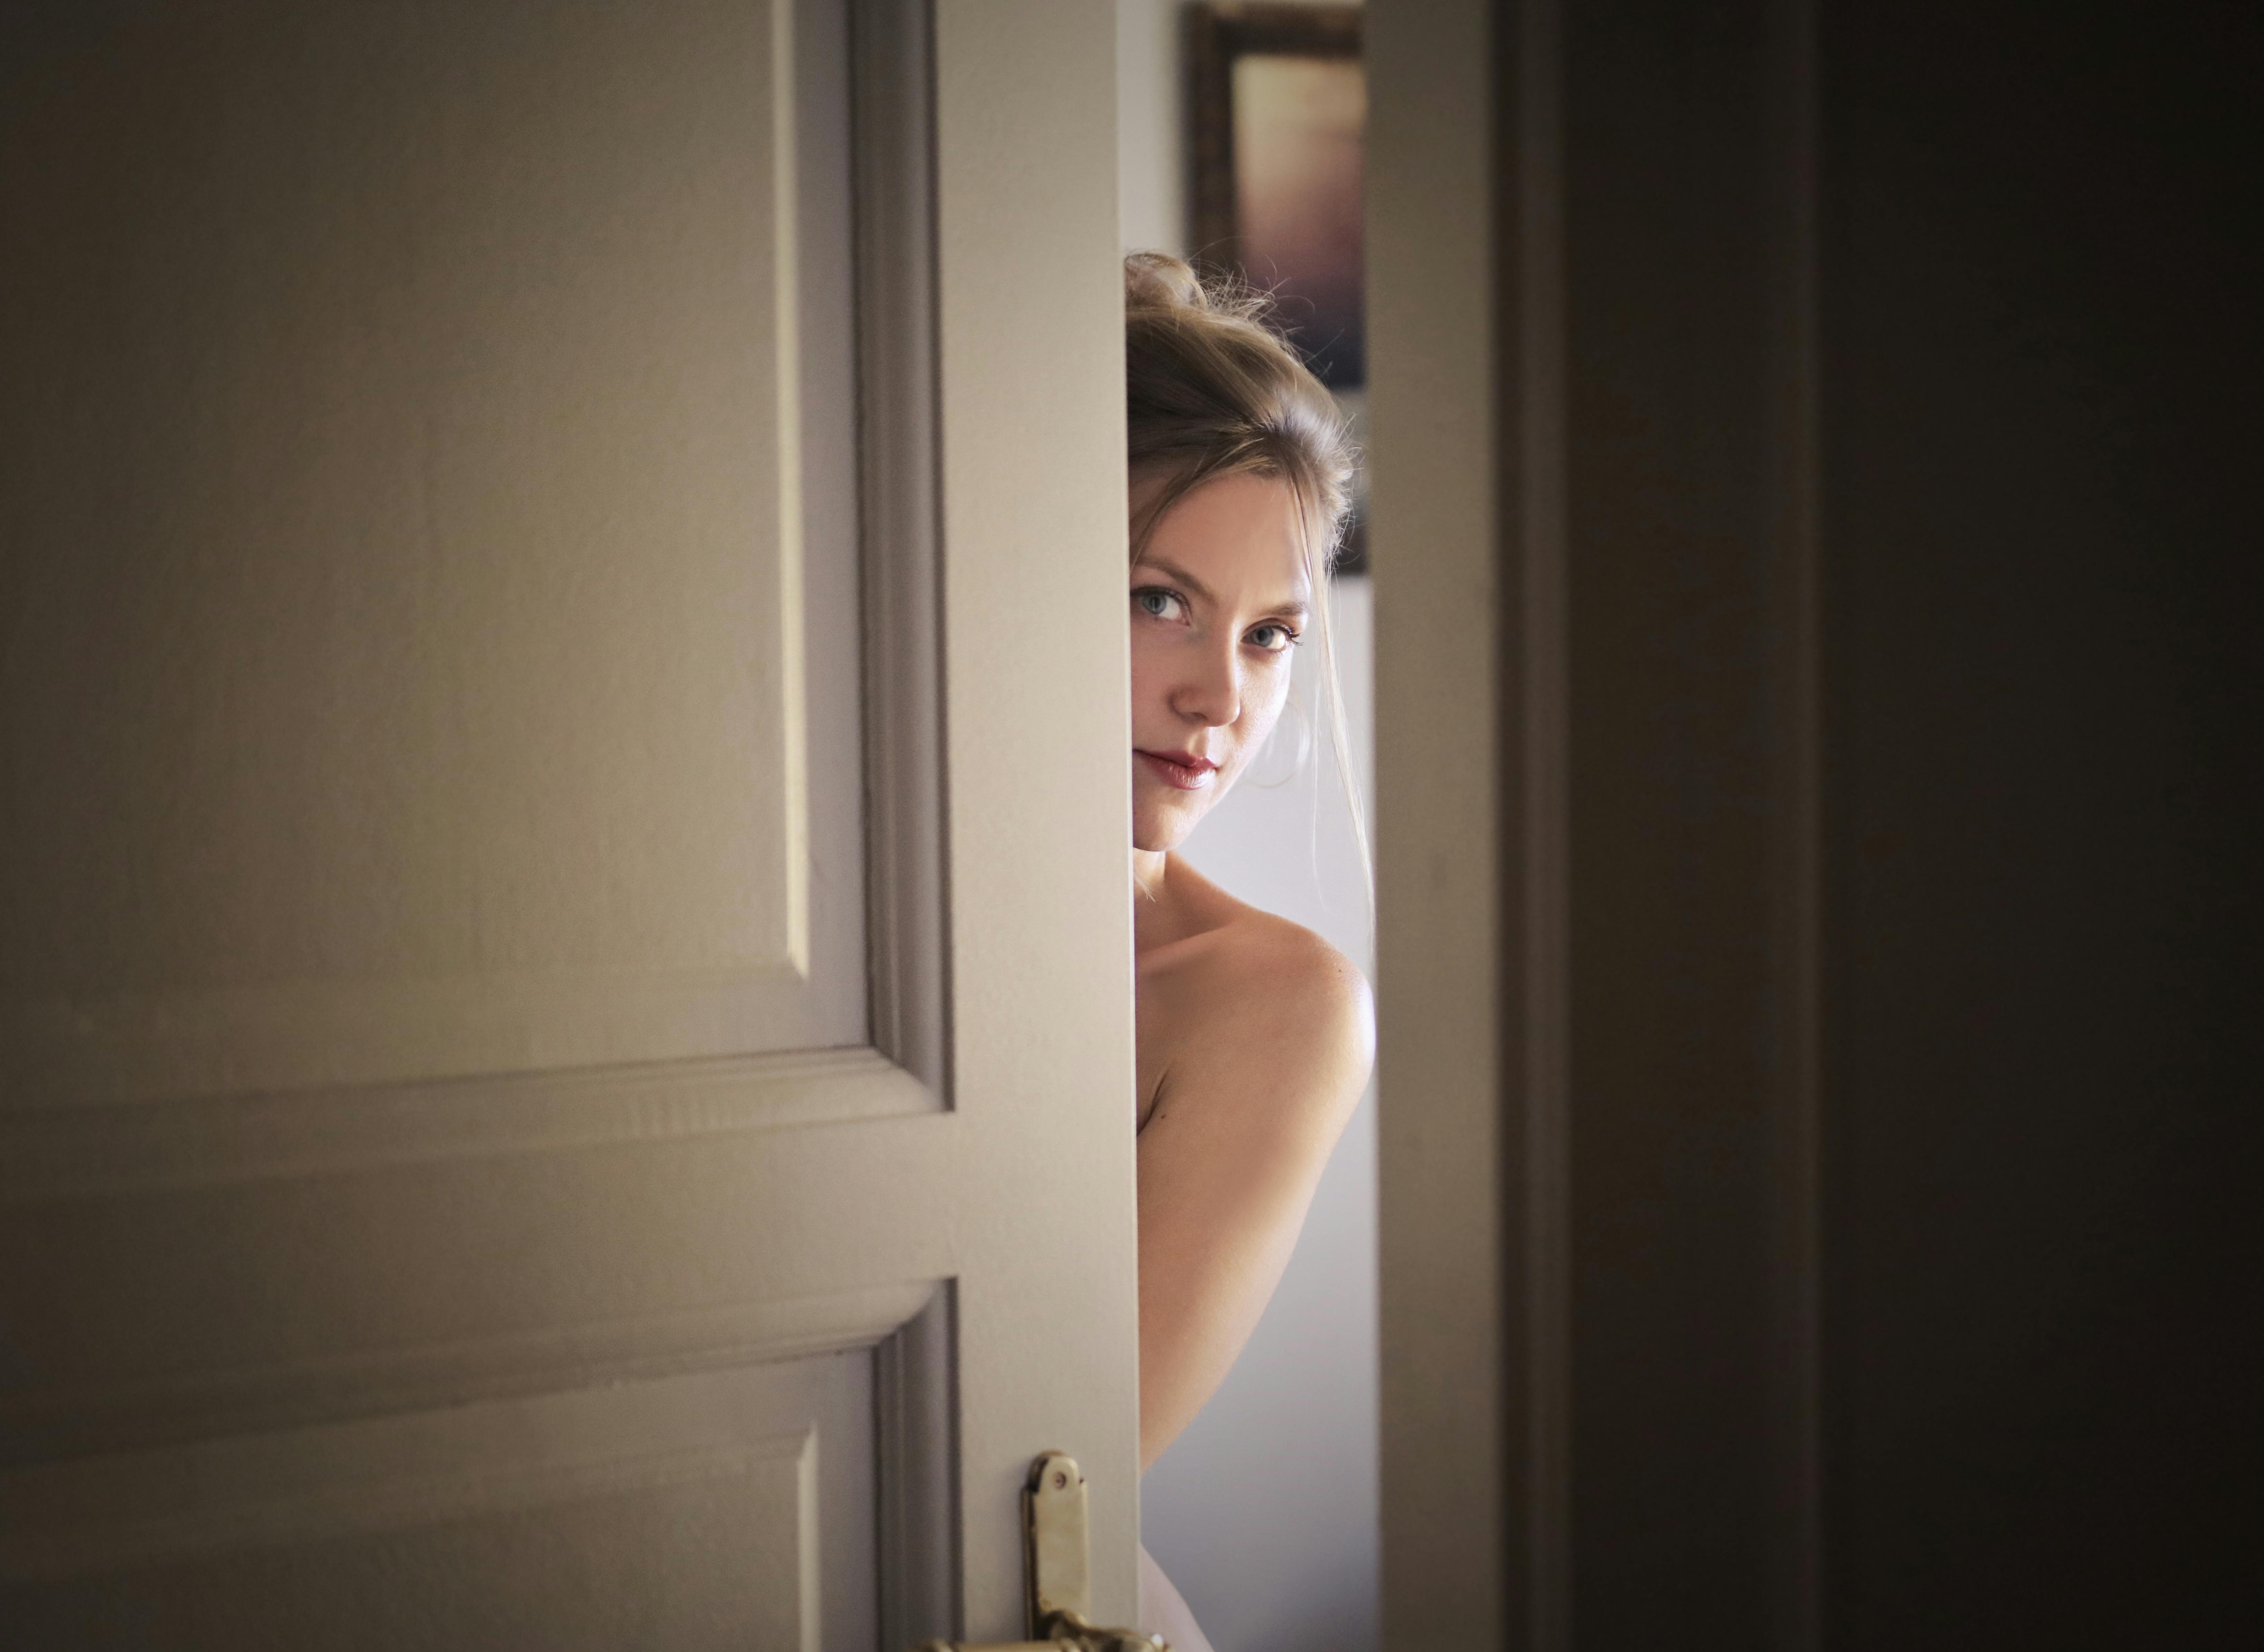 A woman behind a door | Source: Pexels